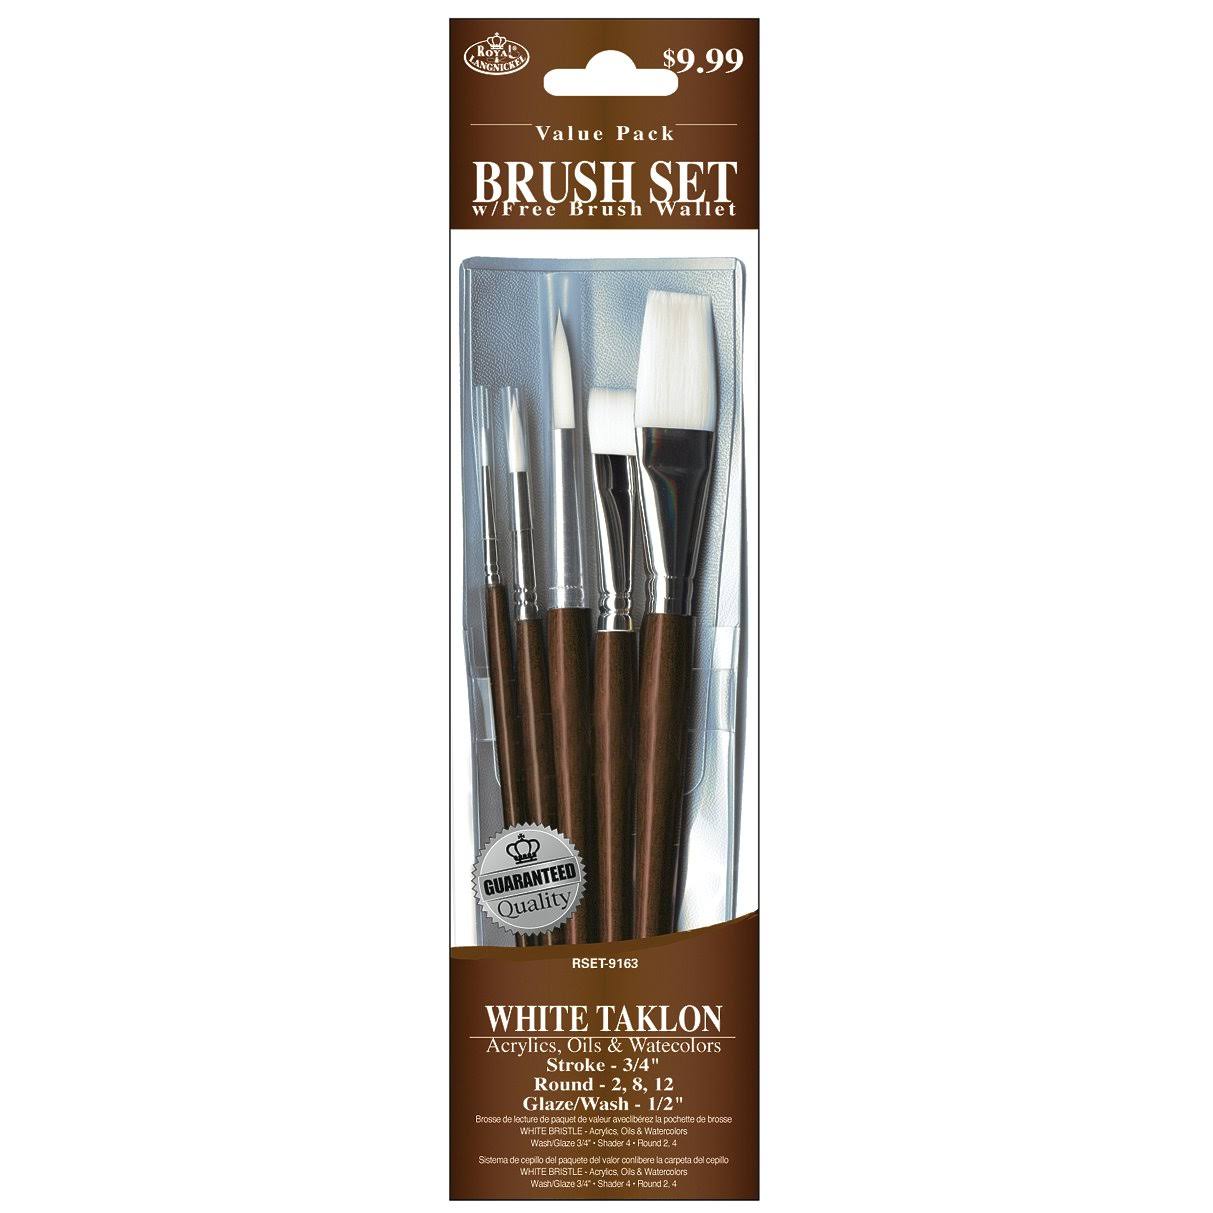 Royal Brush White Taklon Value Pack Brush Set-5/Pkg